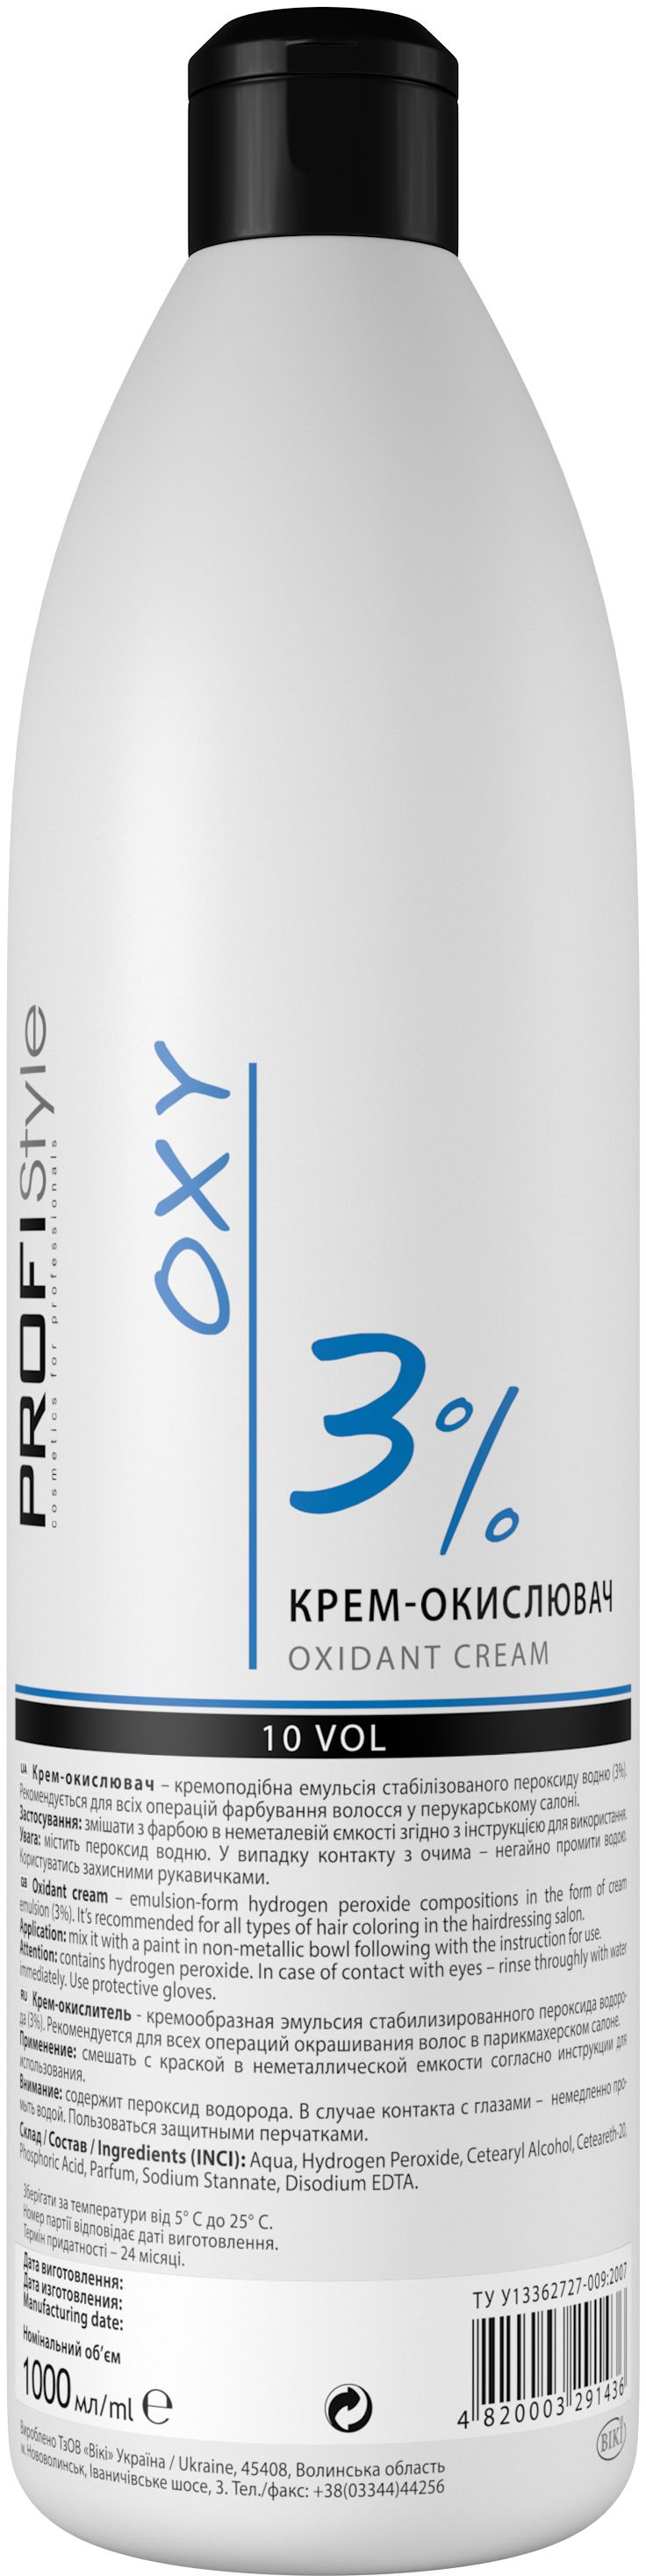 Крем-окислитель 3%